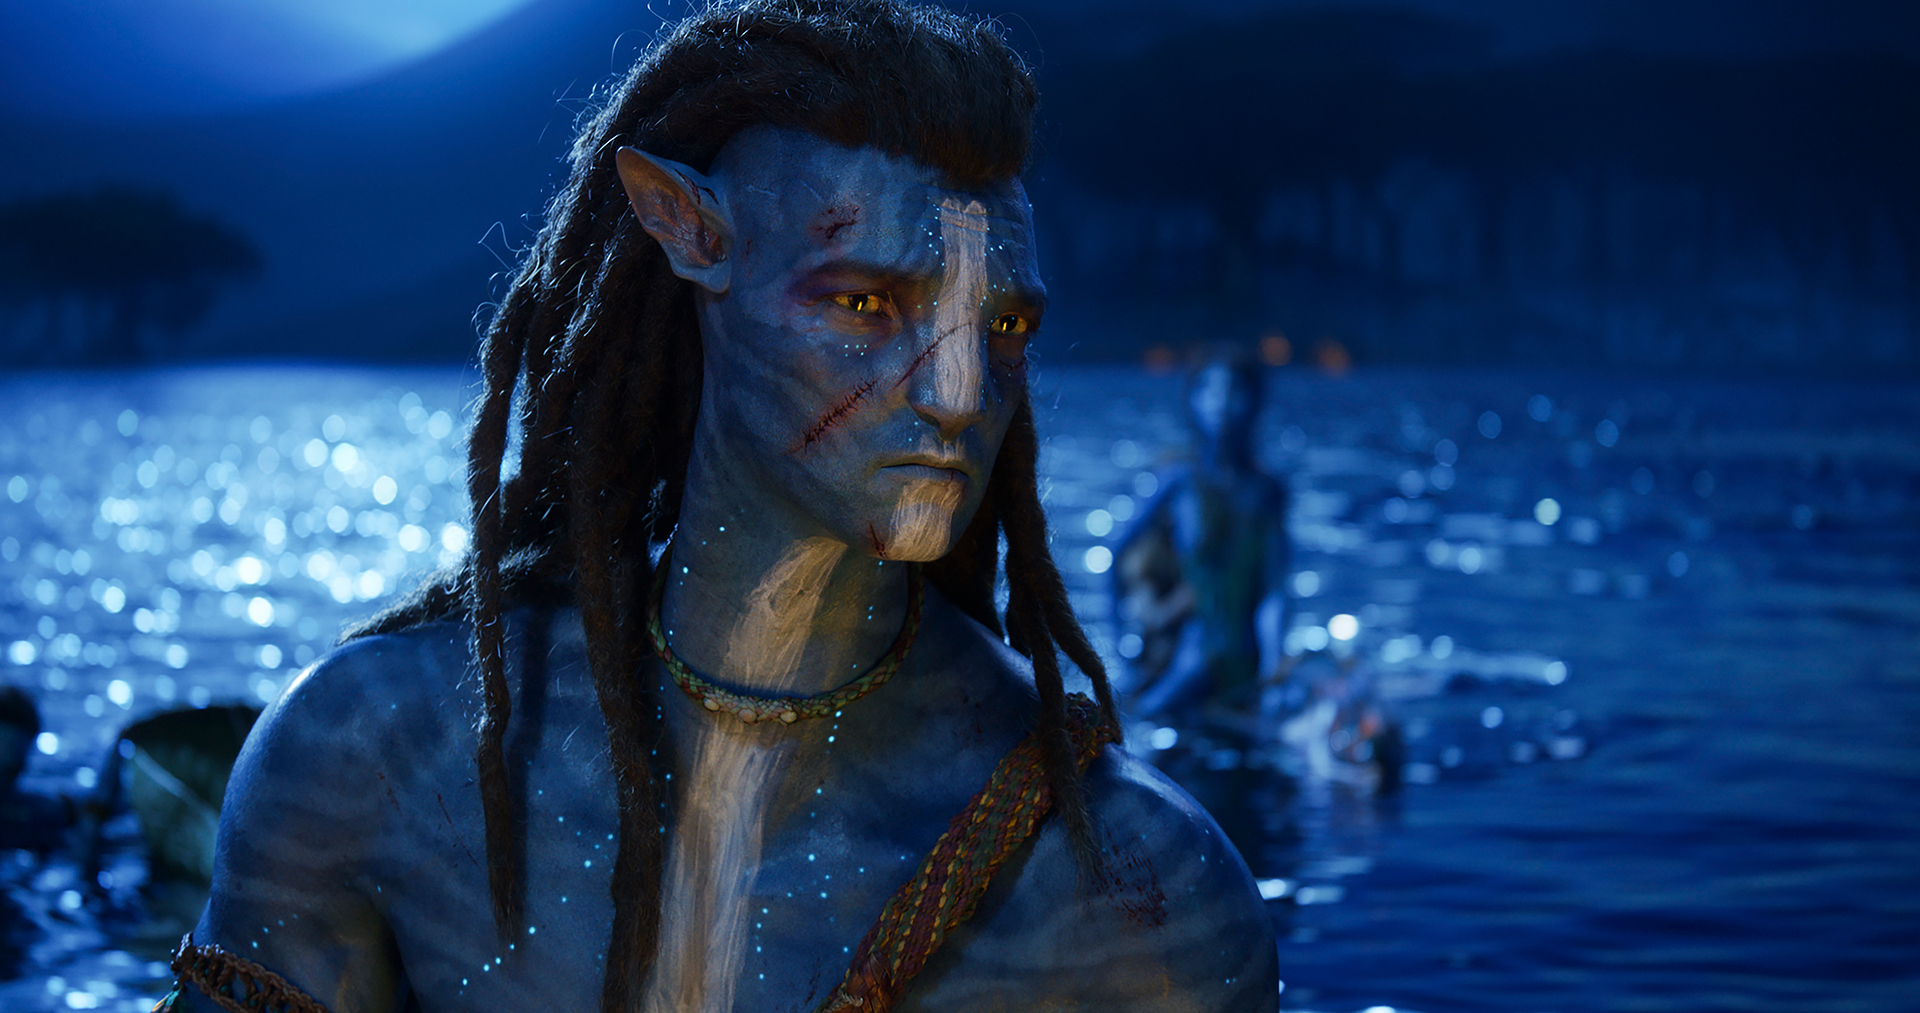 James Cameron\'s Avatar: The Way of Water - tính năng mới: Avatar: The Way of Water của James Cameron không chỉ có câu chuyện độc đáo và kĩ xảo tuyệt vời mà còn có một tính năng mới thú vị. Đó là chế độ xem 3D không cần kính. Hãy tận hưởng trải nghiệm điện ảnh sống động hơn bao giờ hết với tính năng này.